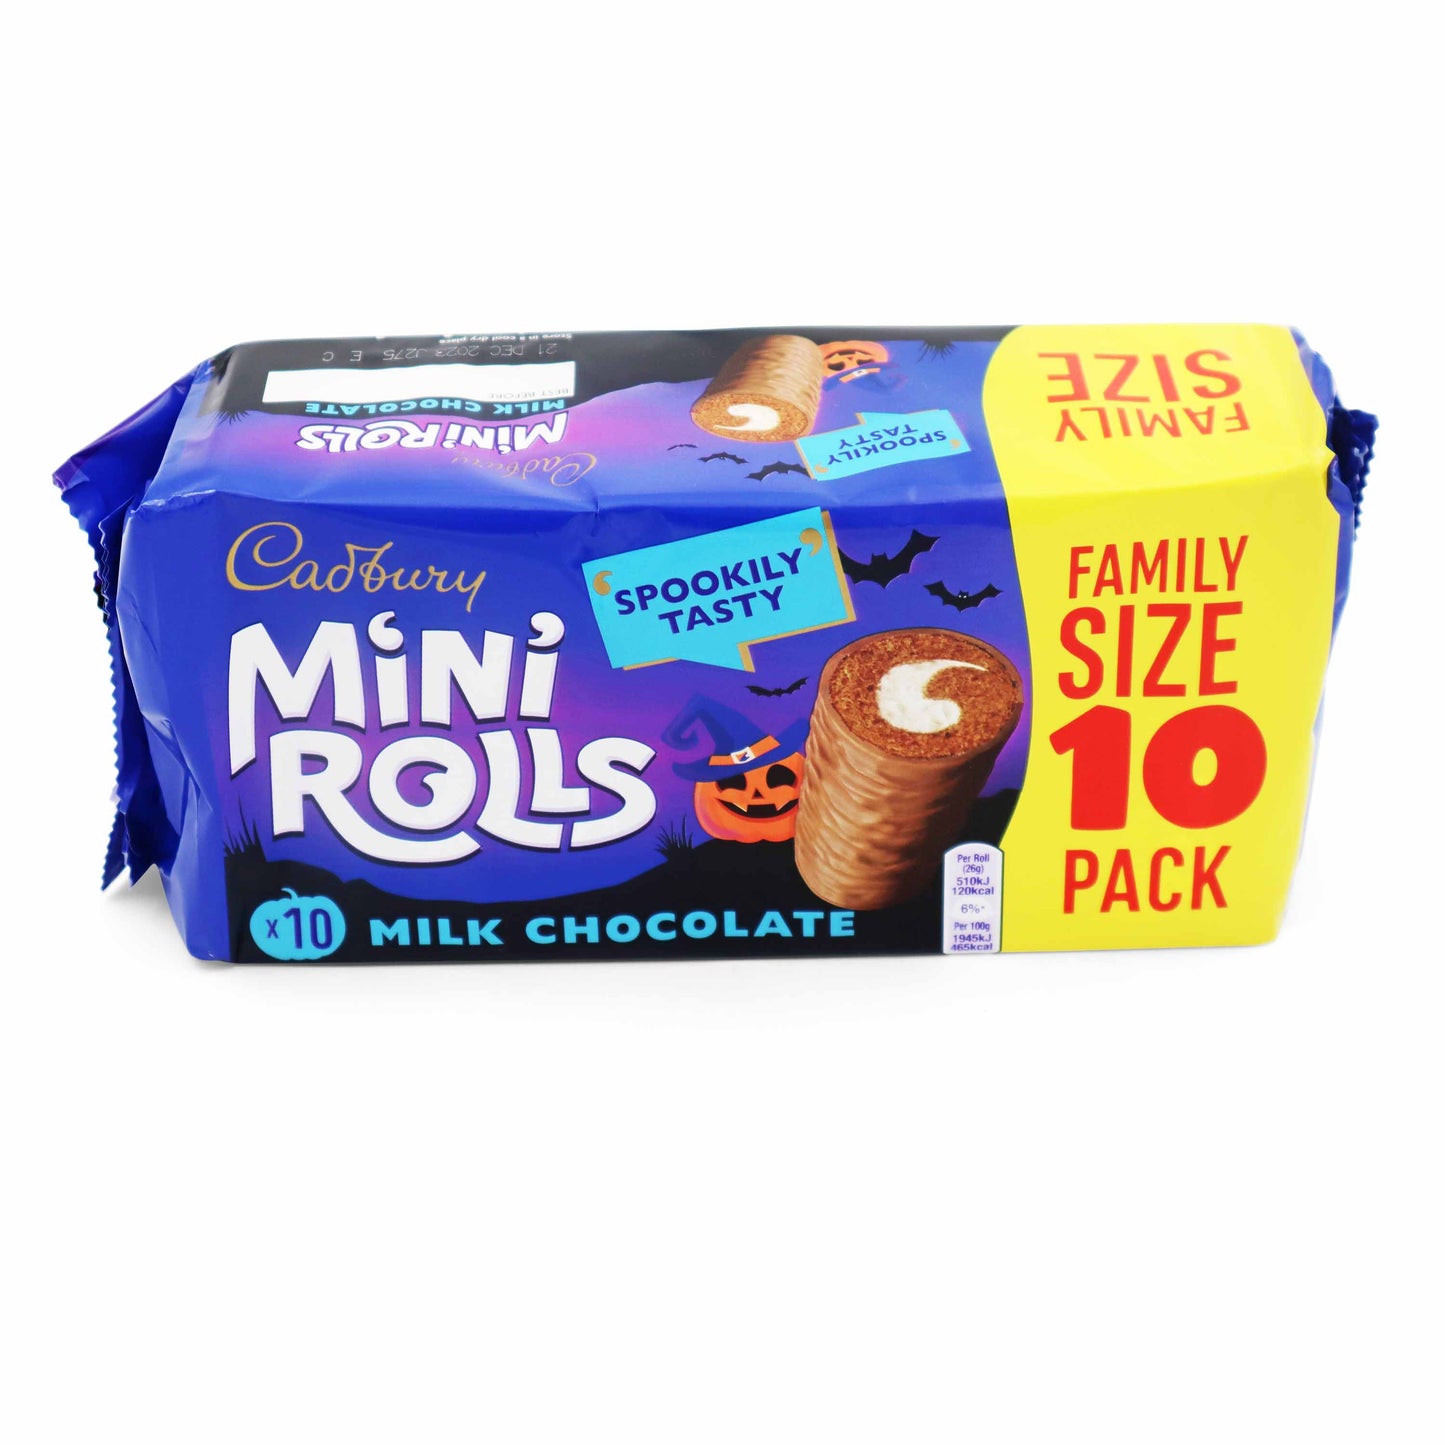 Cadbury Chocolate Mini Rolls Cakes - 10 Pack - British Snacks